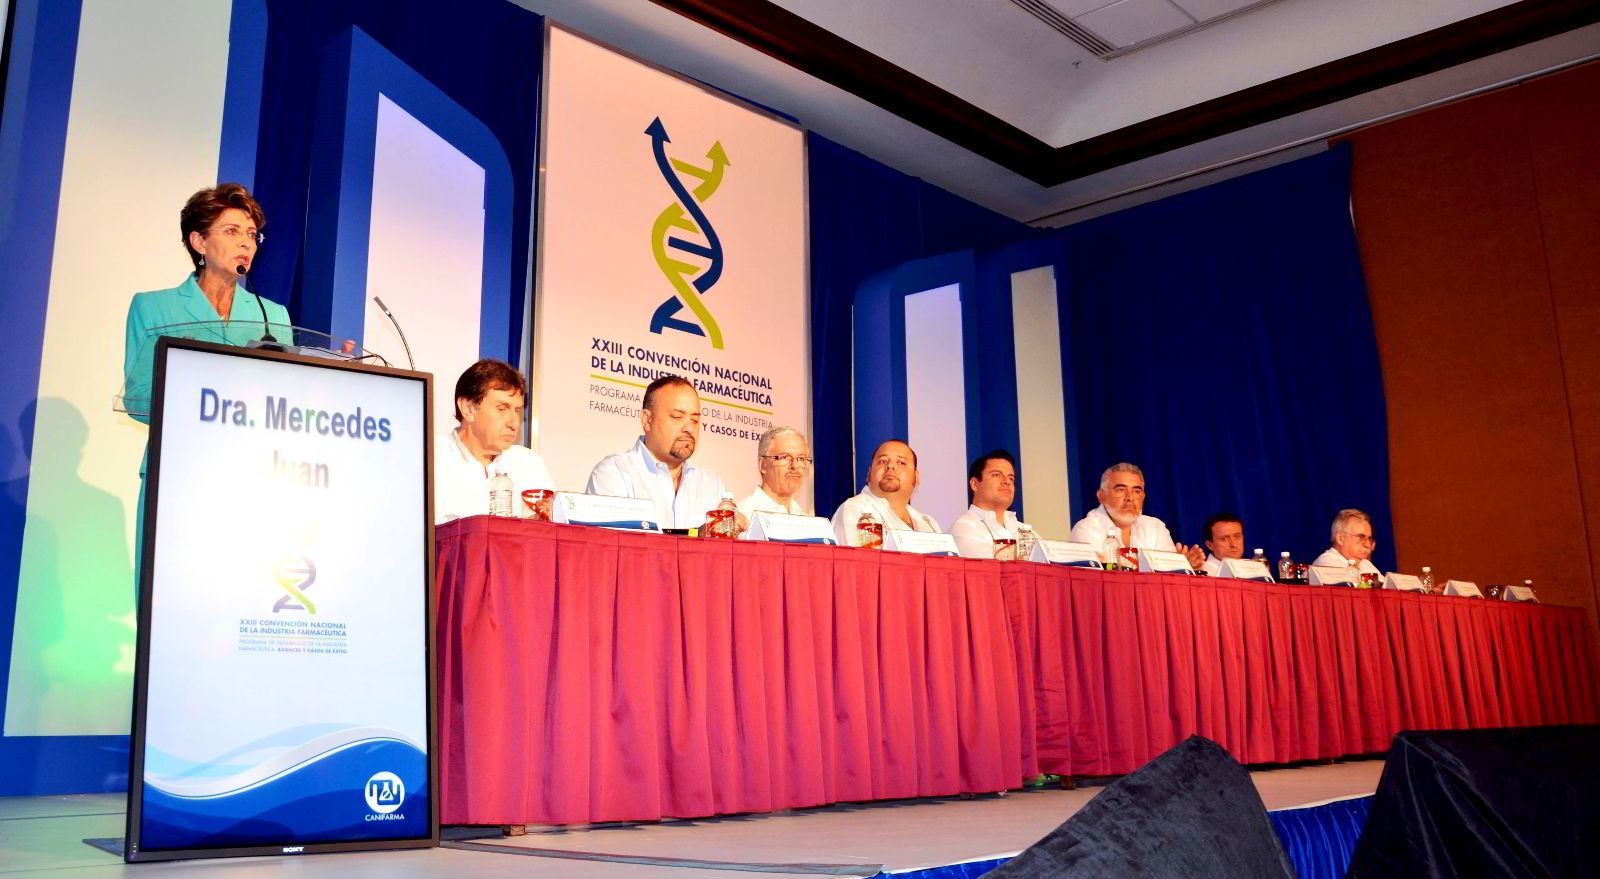 Personas sentadas en una mesa Mercede Juan de pie en un podium atras un letrero "XXIII Convención Nacional de la Industria Farmacéutica"